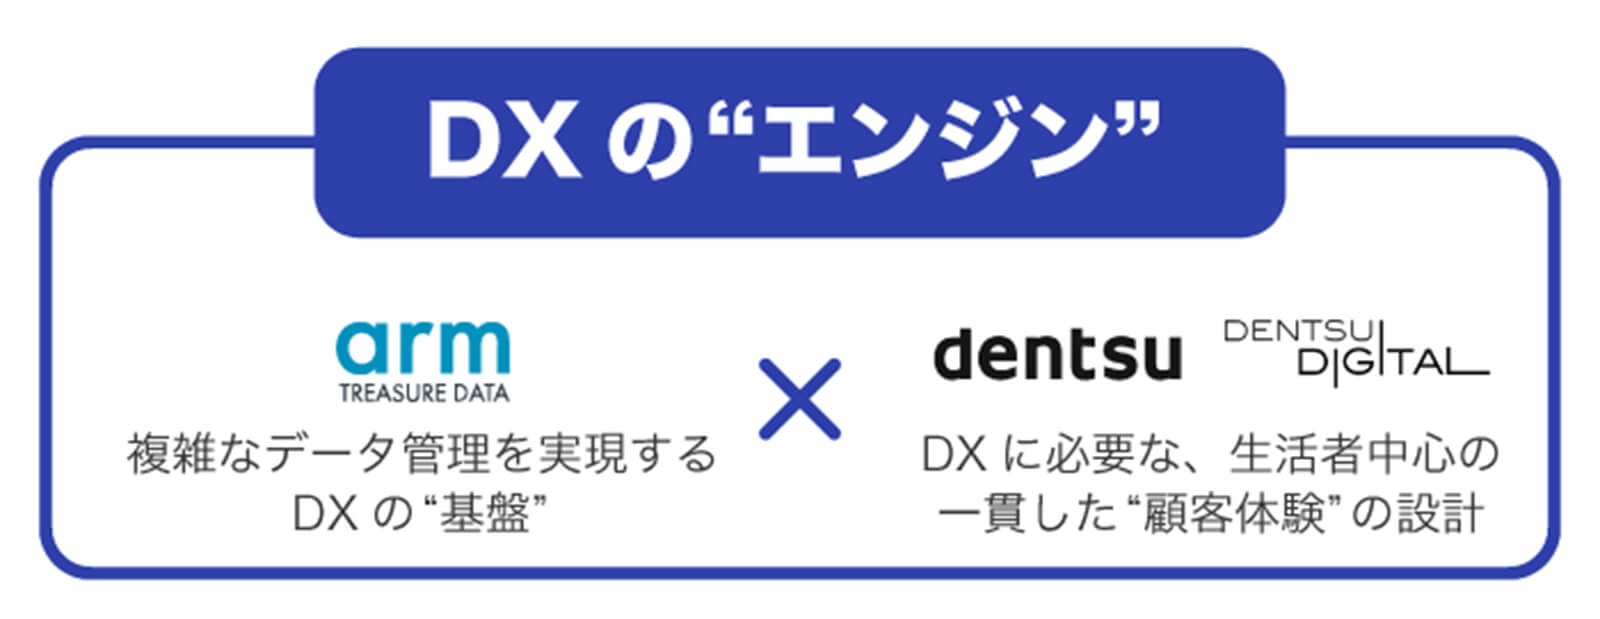 dentsu-td-dx-01-mia-3